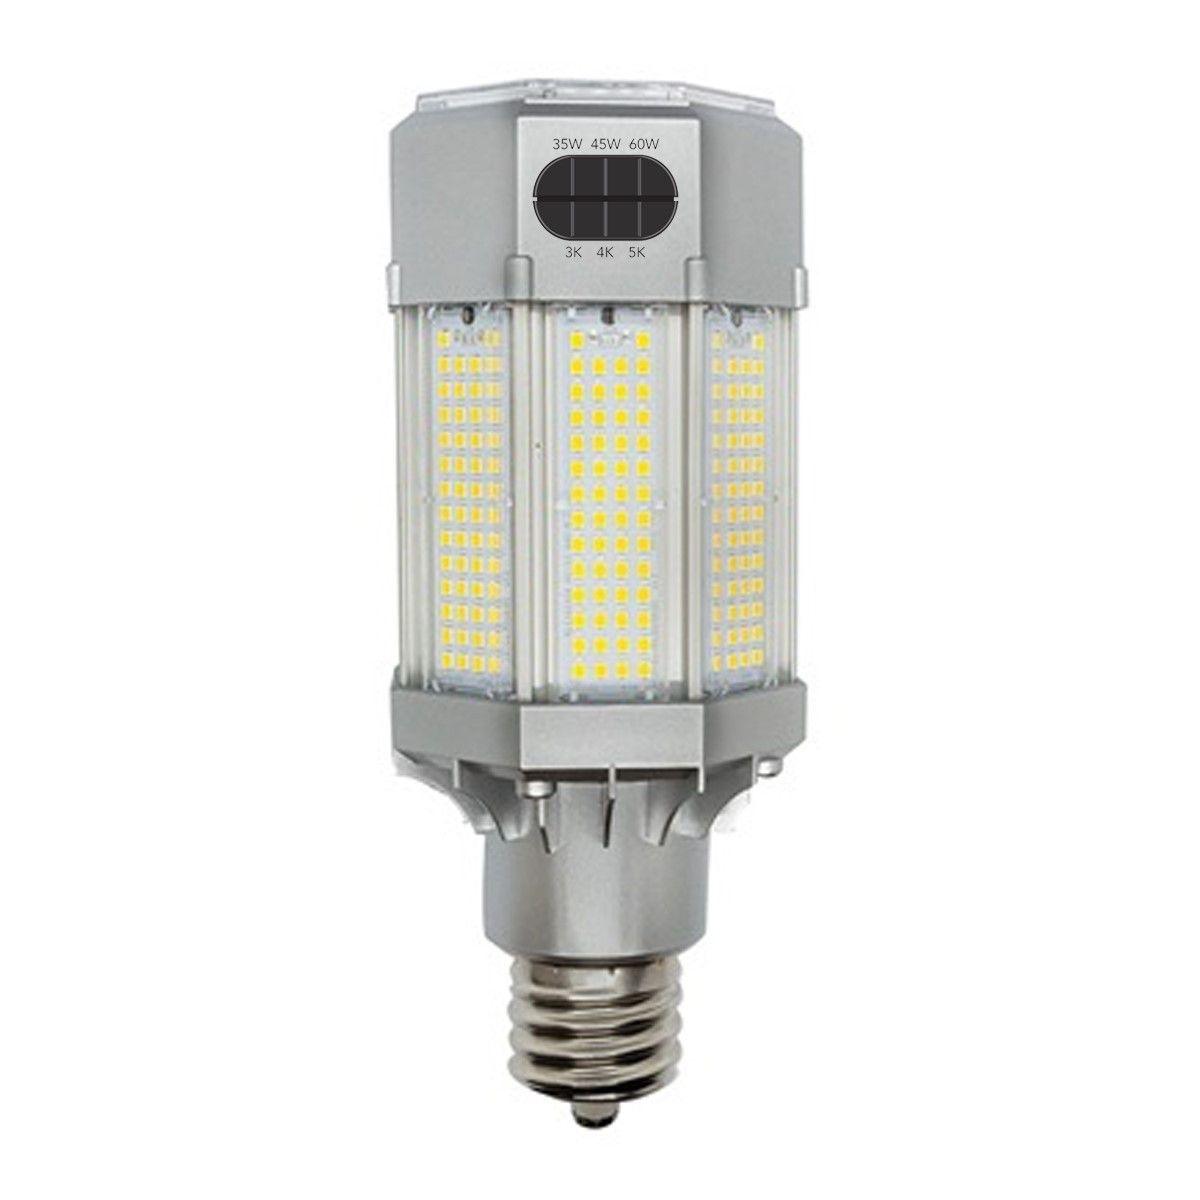 LED Corn Retrofit Lamp, 110W, 15730 Lumens, Selectable CCT, 30K/40K/50K, EX39 Mogul Extended Base, 480V